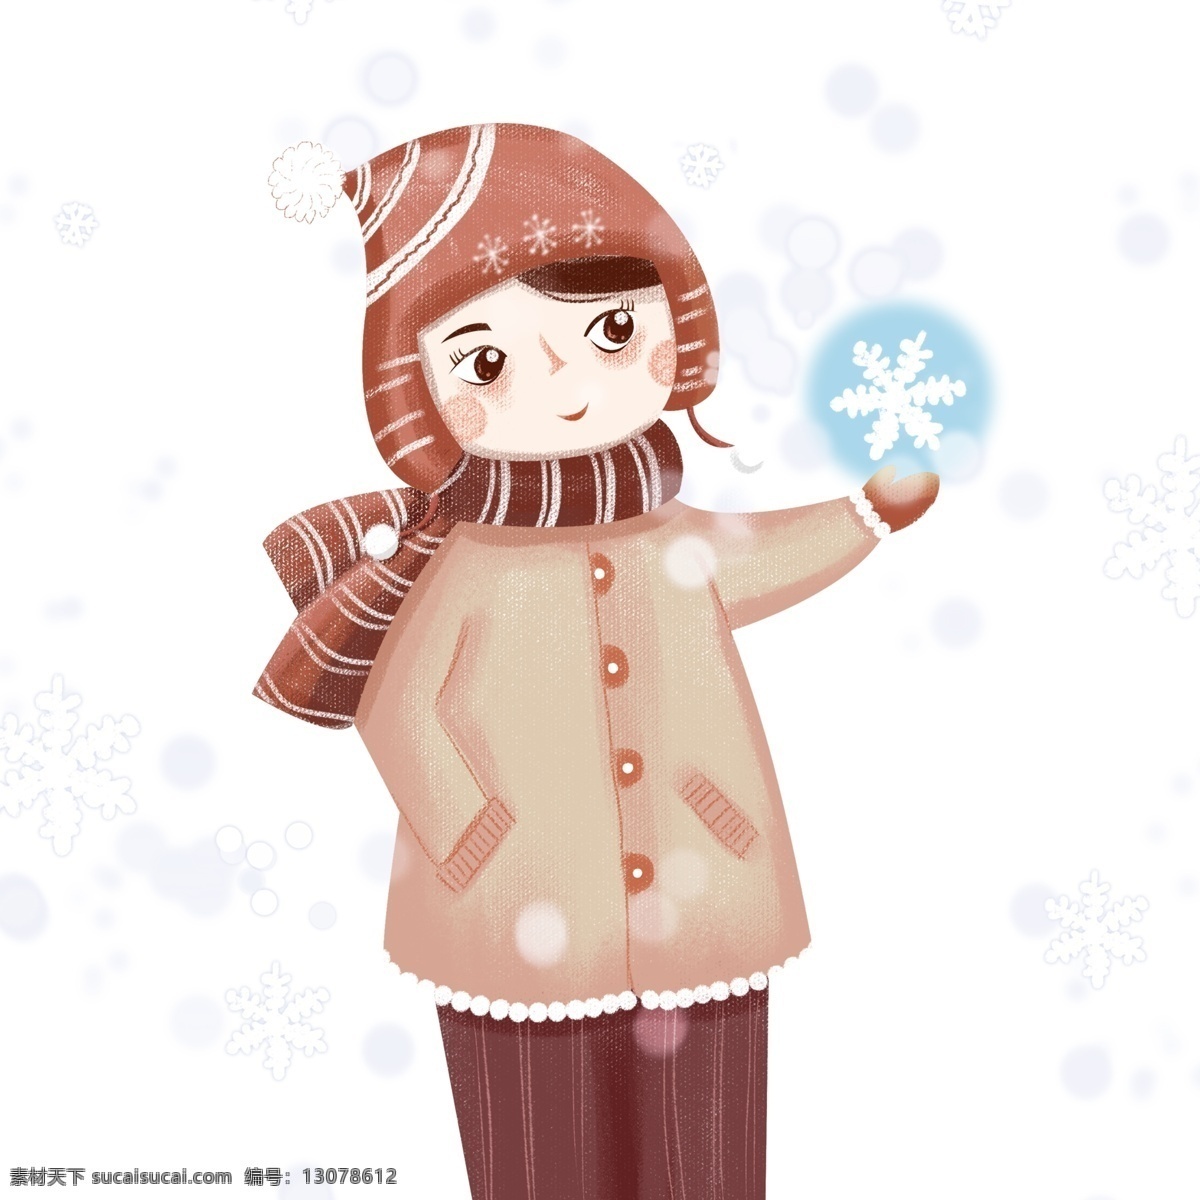 冬天 大雪 中 雪球 女孩 唯美 清新 雪花 人物 插画 手绘